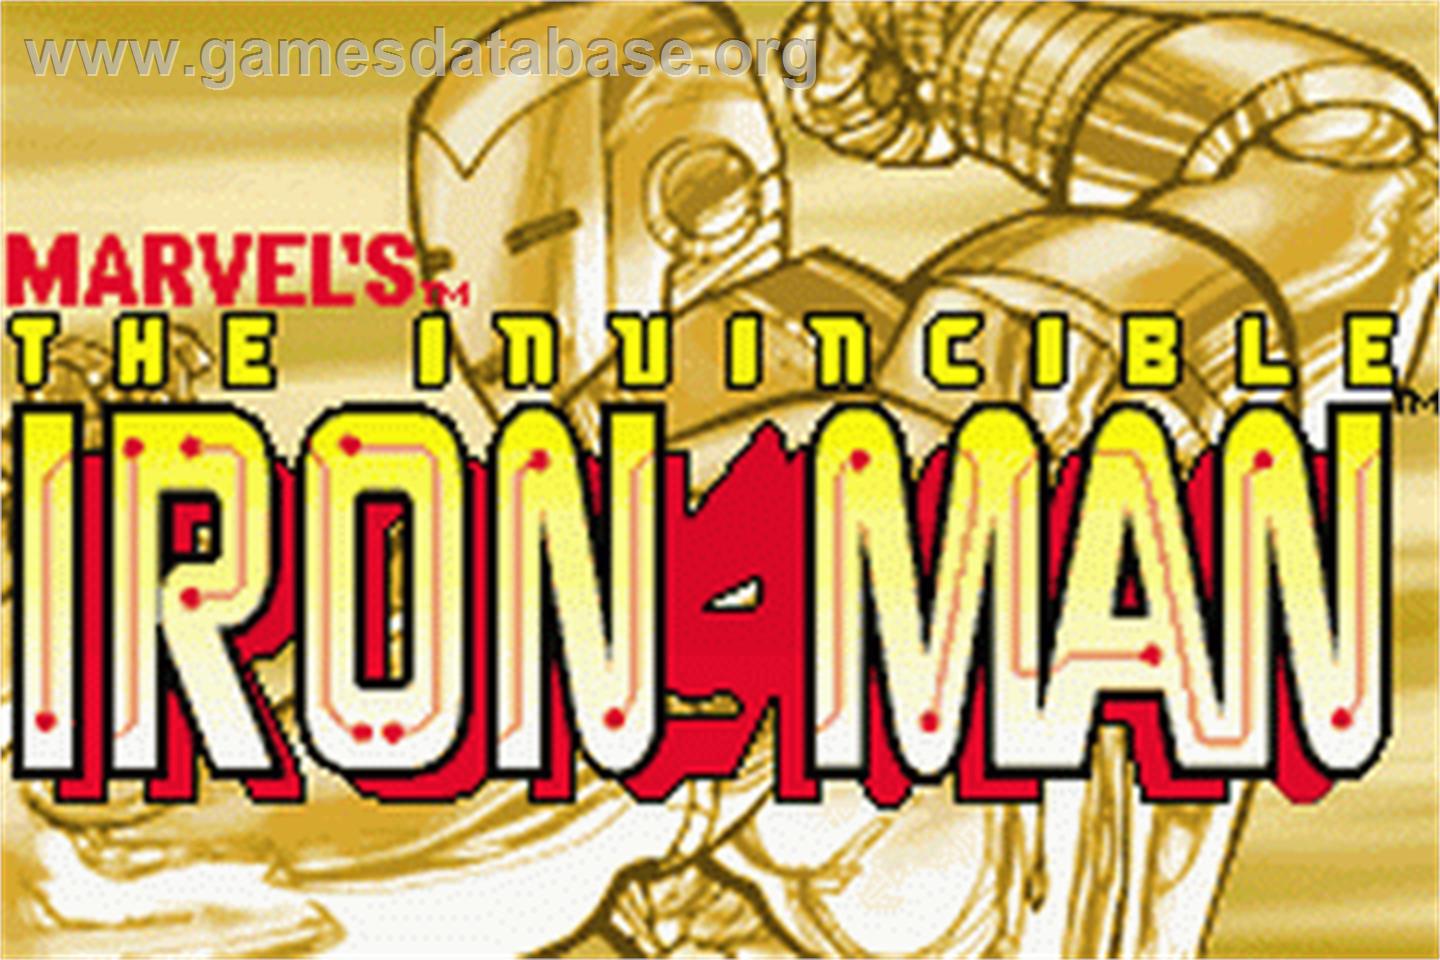 Invincible Iron Man - Nintendo Game Boy Advance - Artwork - Title Screen